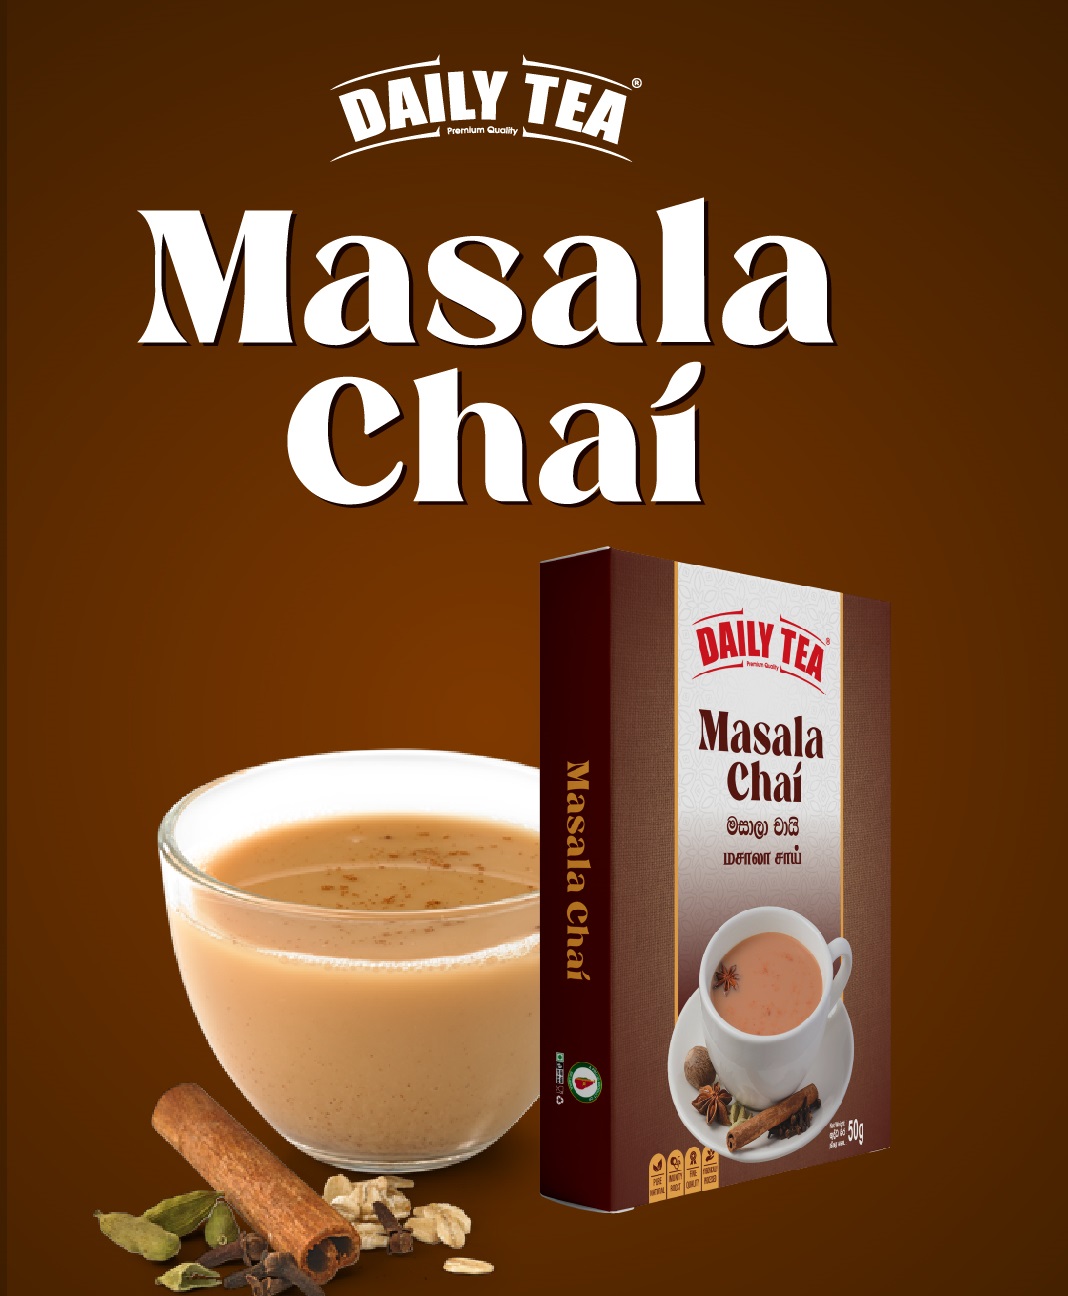 Daily Tea Masala Chai 50G Box 100% Natural Spices Ceylon Tea Immunity Boost Herbal Tea